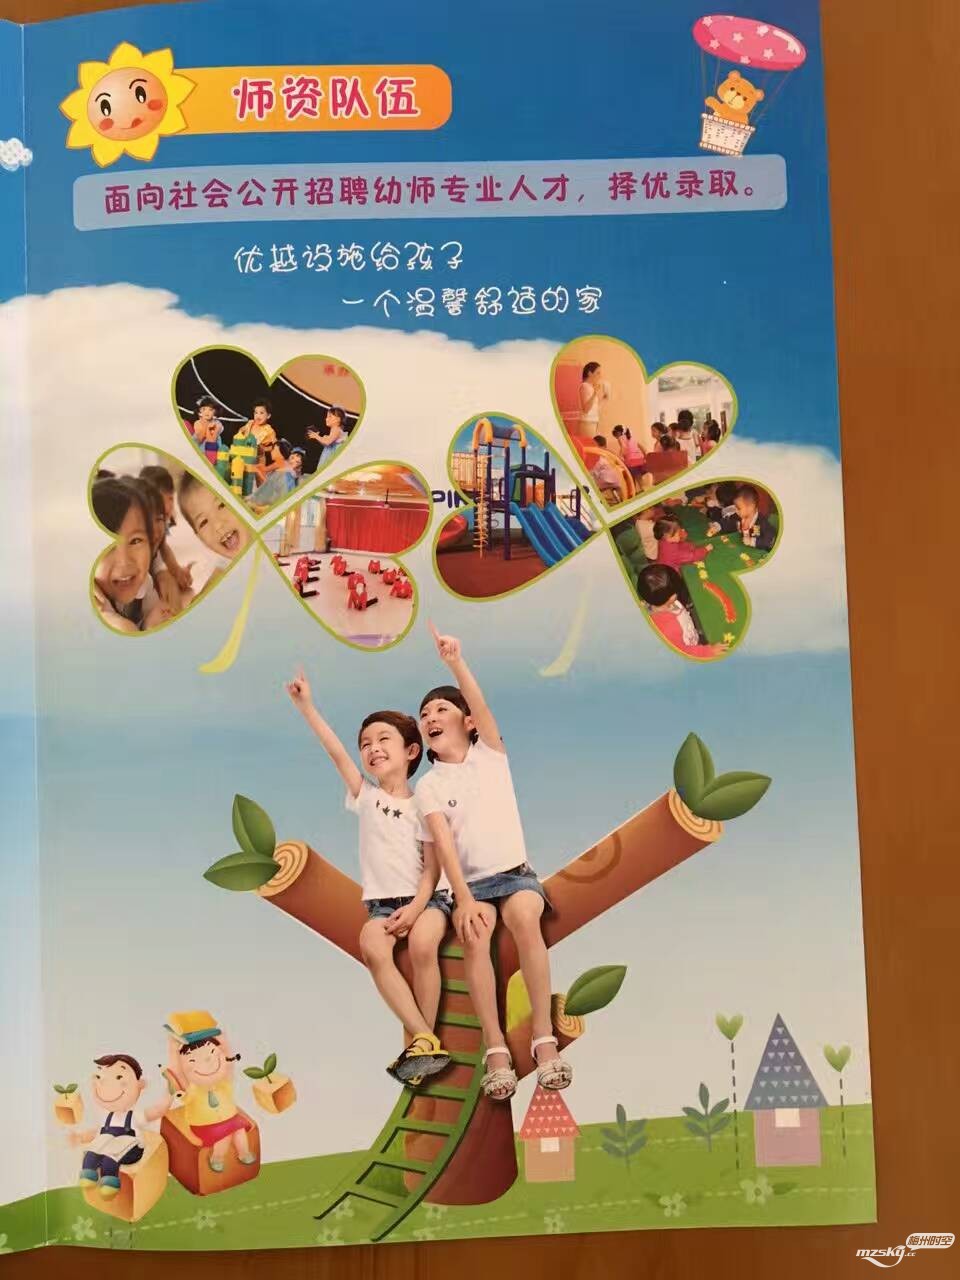 朋友在兴宁开办了“华润国学幼儿园”，开园招生